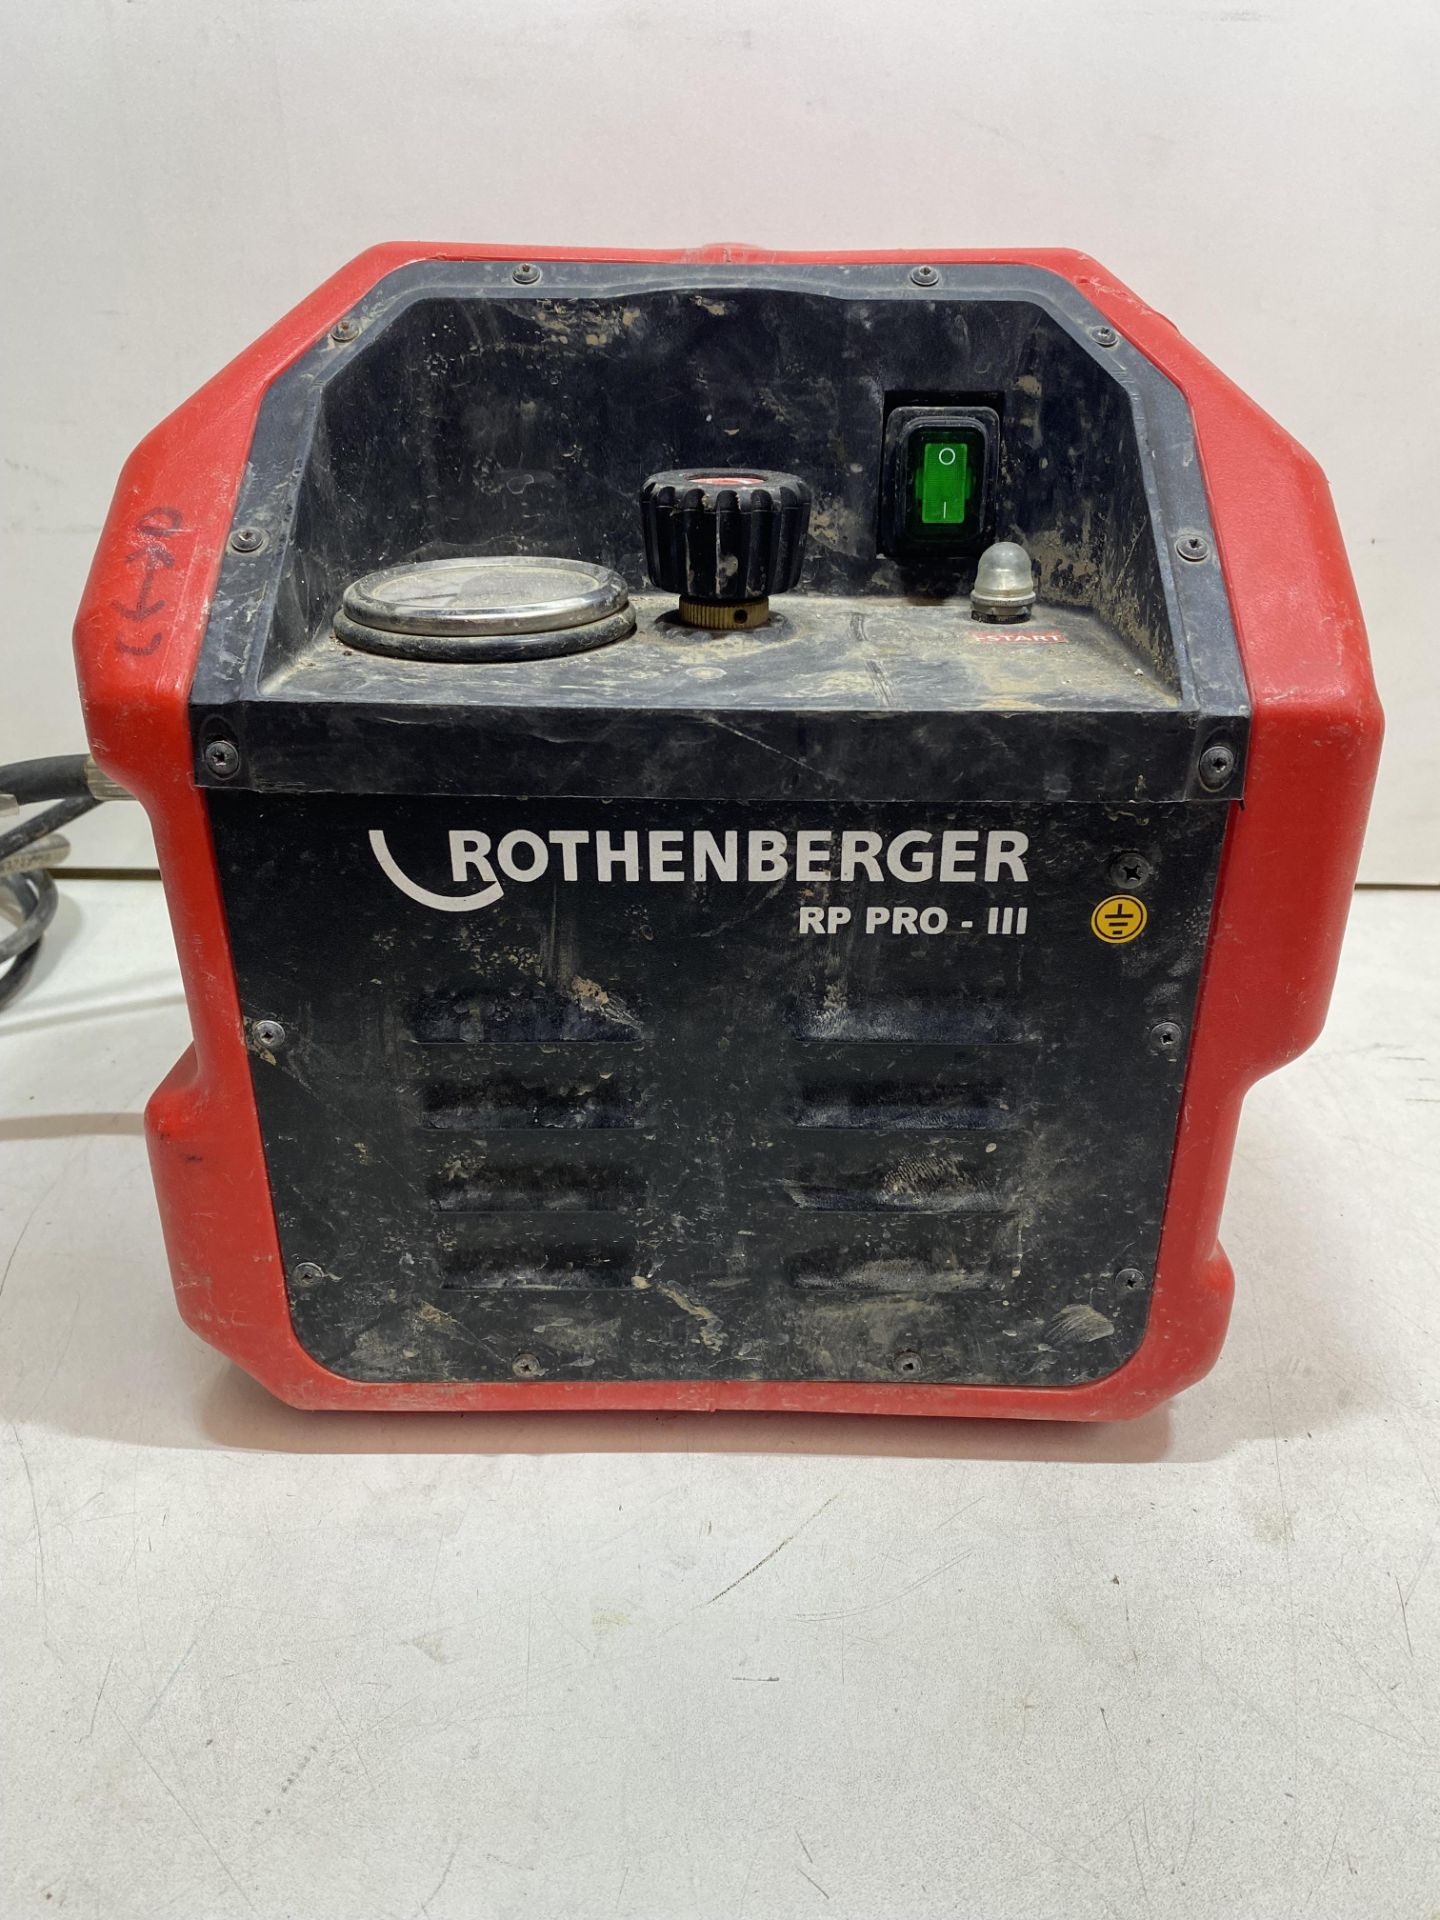 Rothenberger RP Pro III Electric Pressure Testing Pump, 40bar (500psi), 110v or 230v - Image 2 of 8